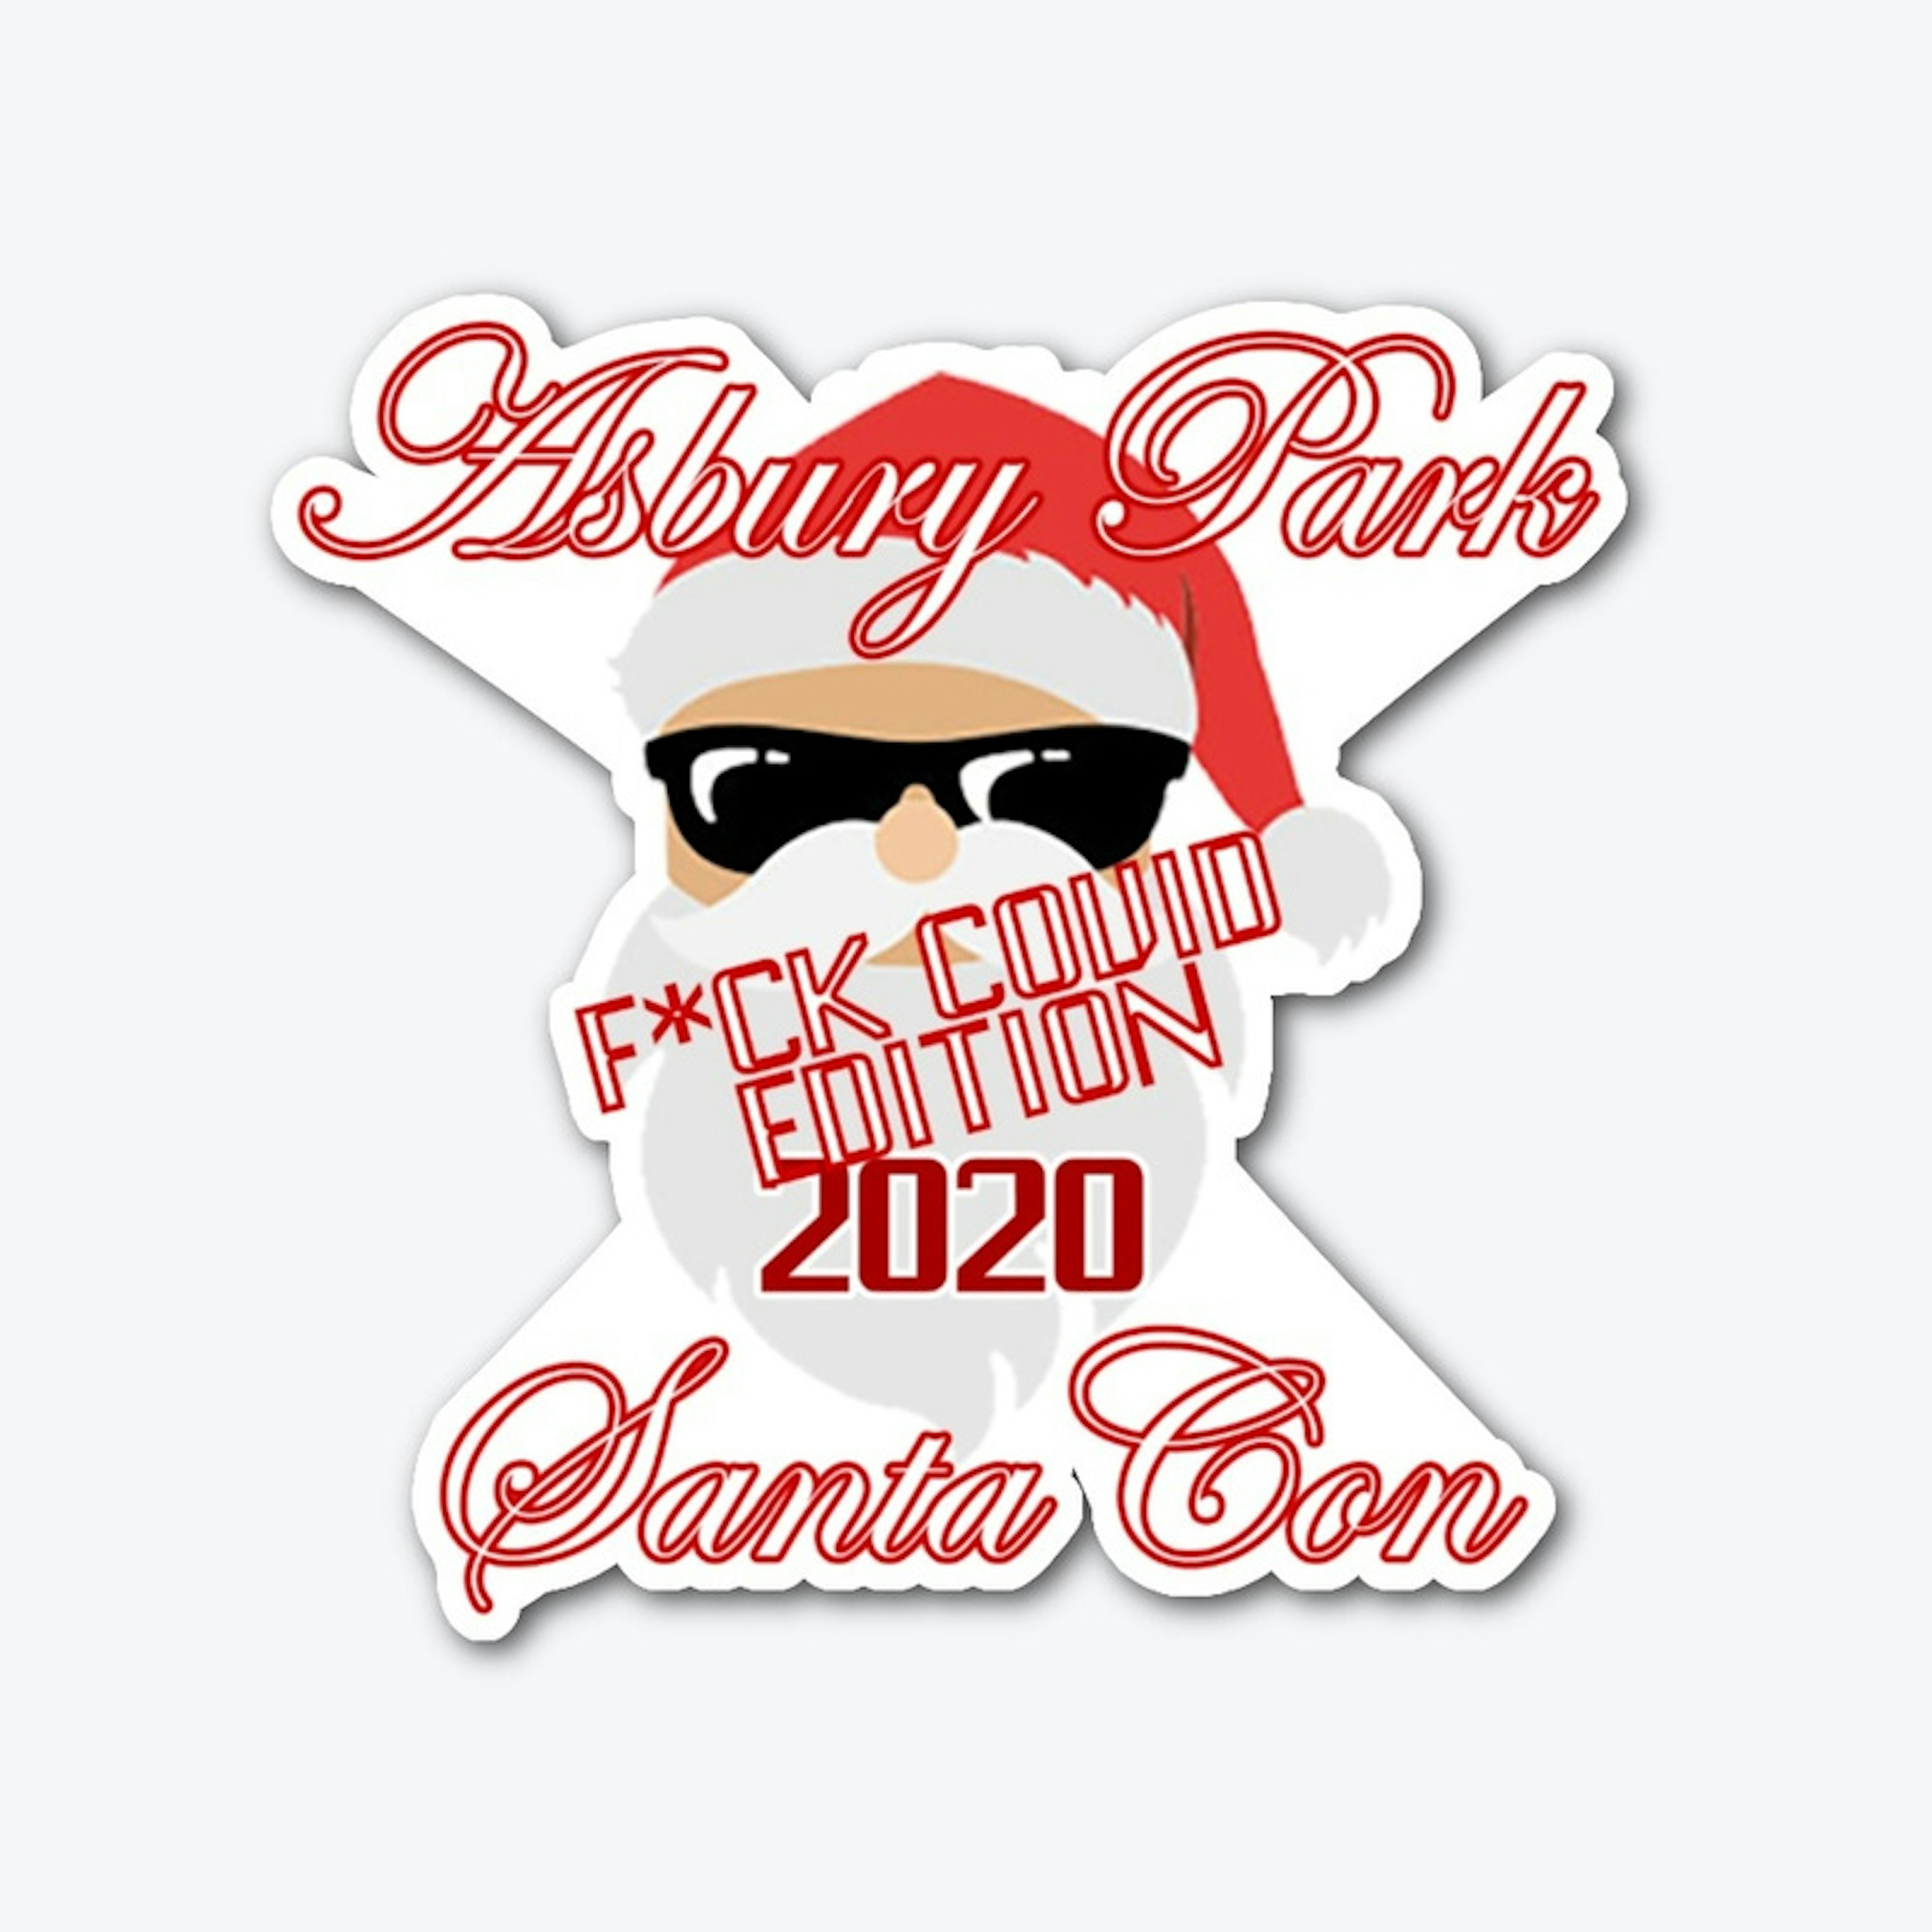 Asbury Park Santa Con 2020